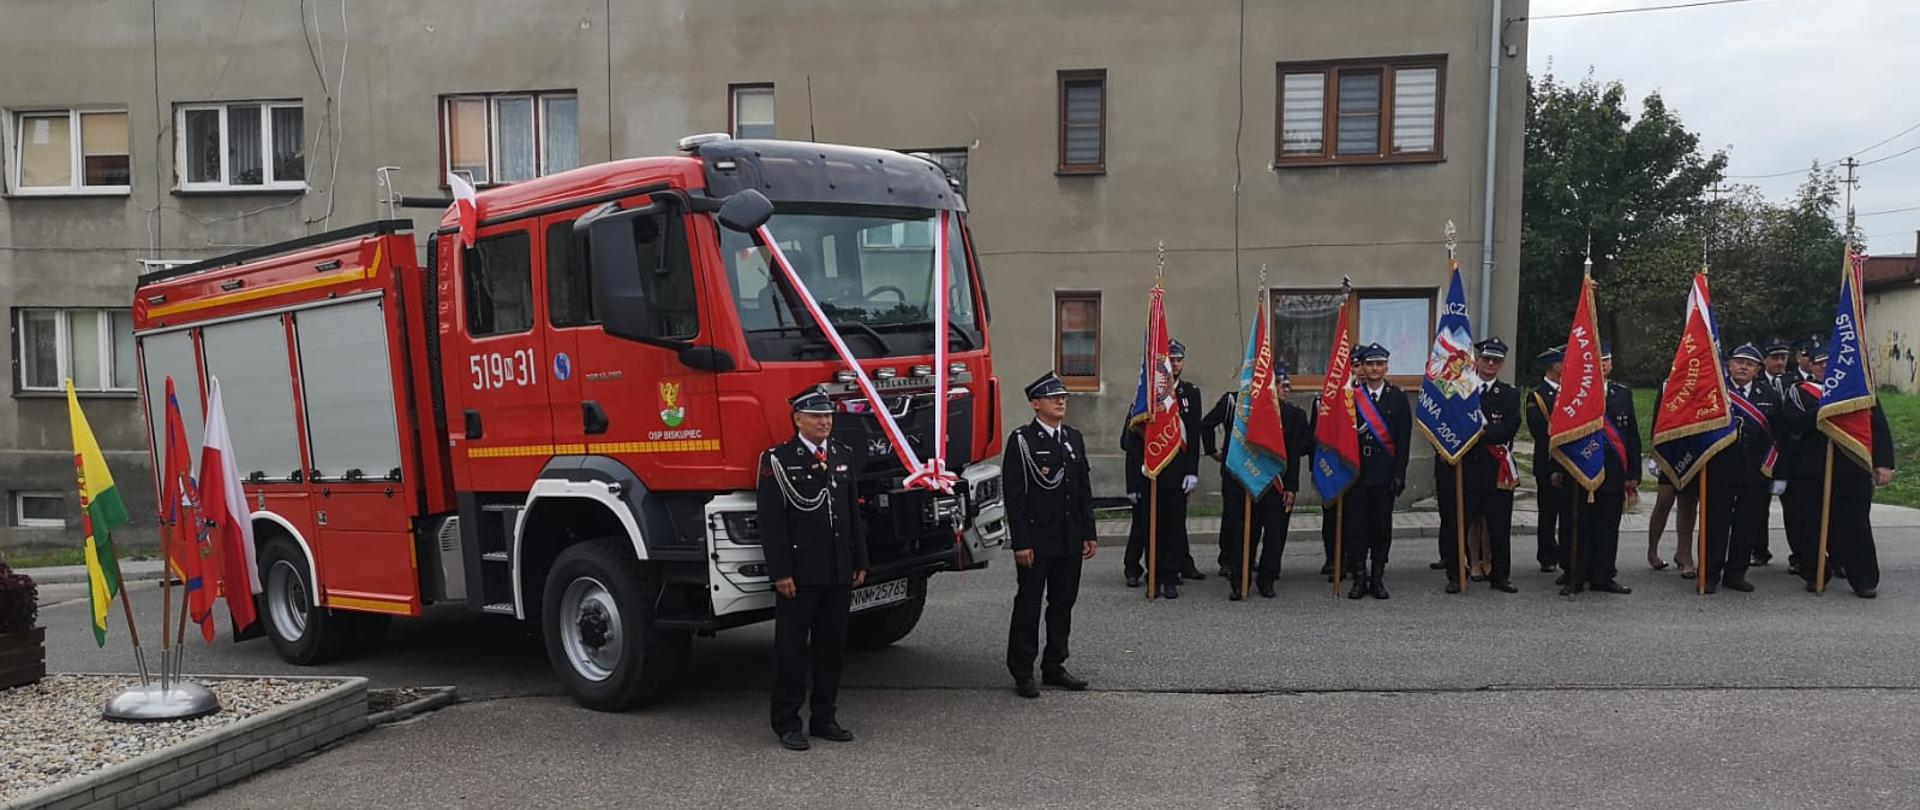 Uroczyste przekazanie samochodu pożarniczego jednostce OSP Biskupiec w pow. nowomiejskim